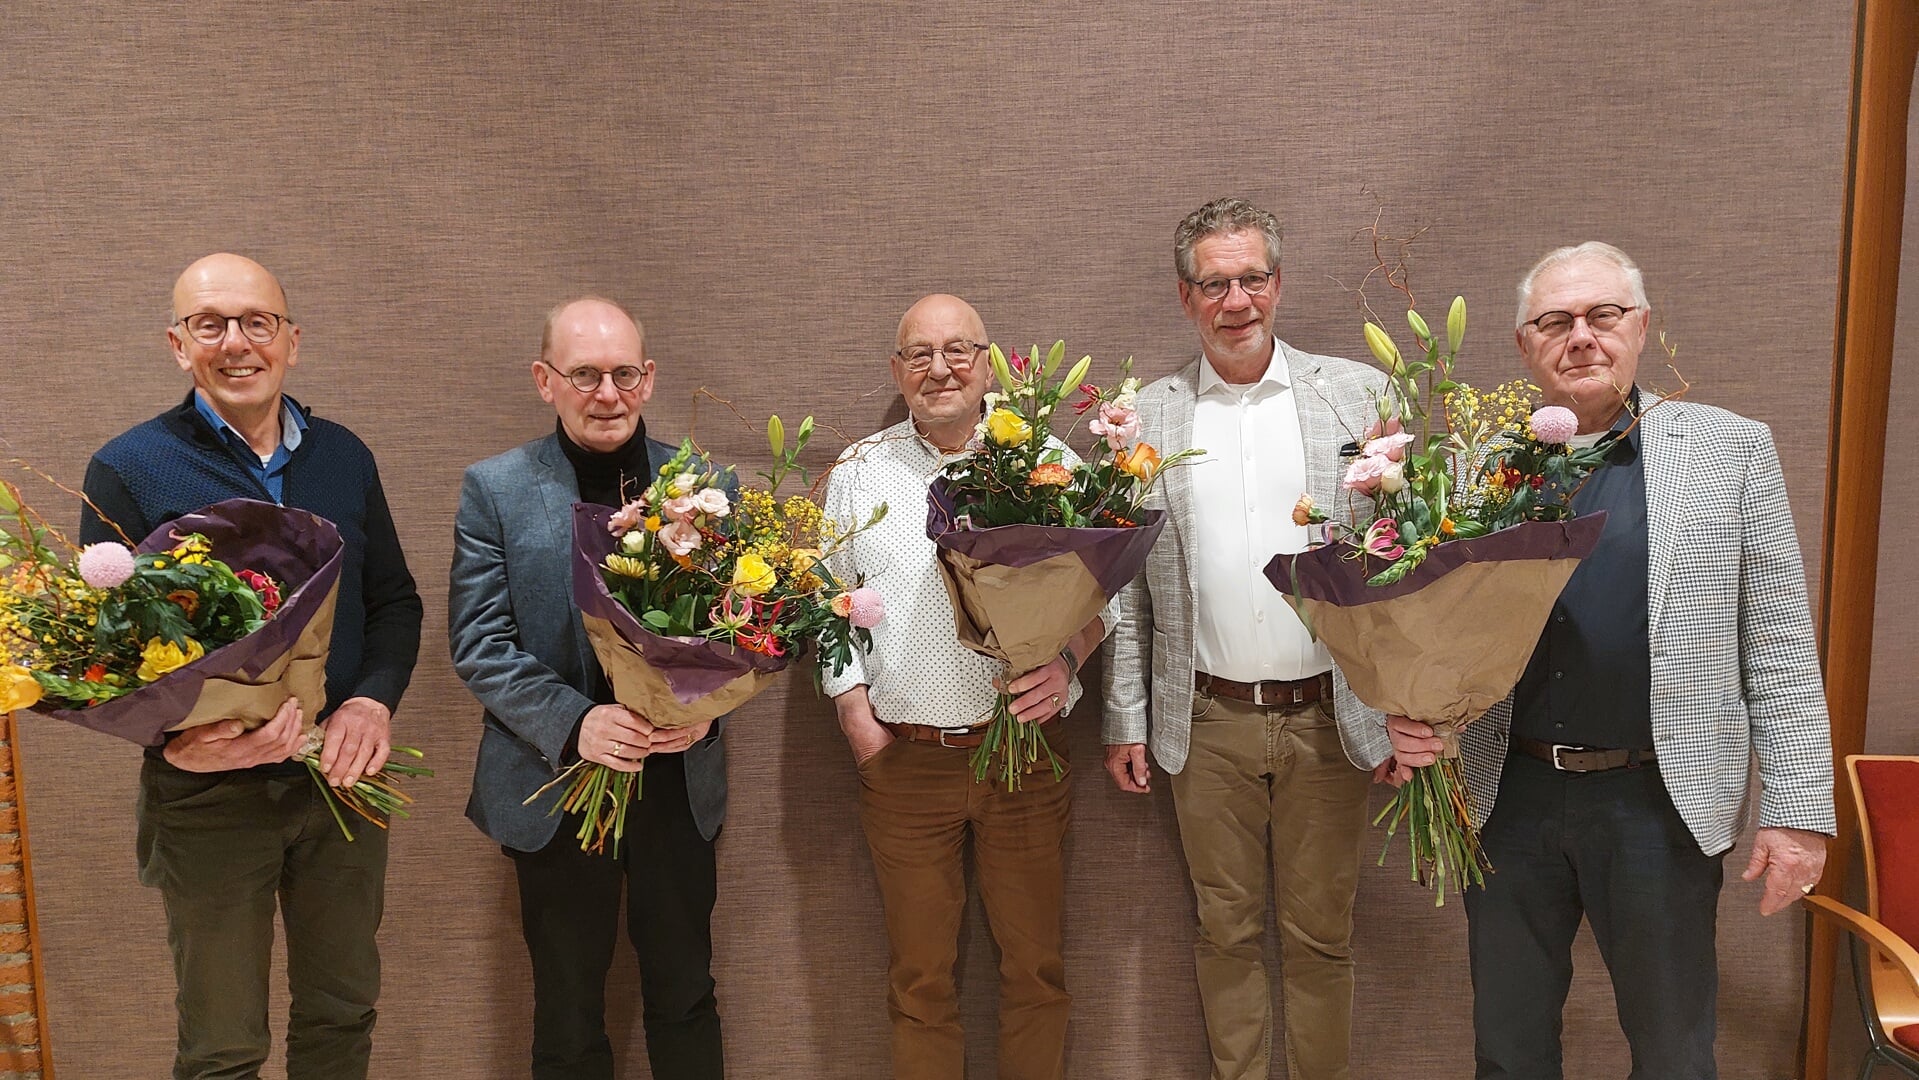 Vlnr: Dick Keizer, Henk Plas, Gerrit Koster, Herman van den Belt, Wim Janssen.